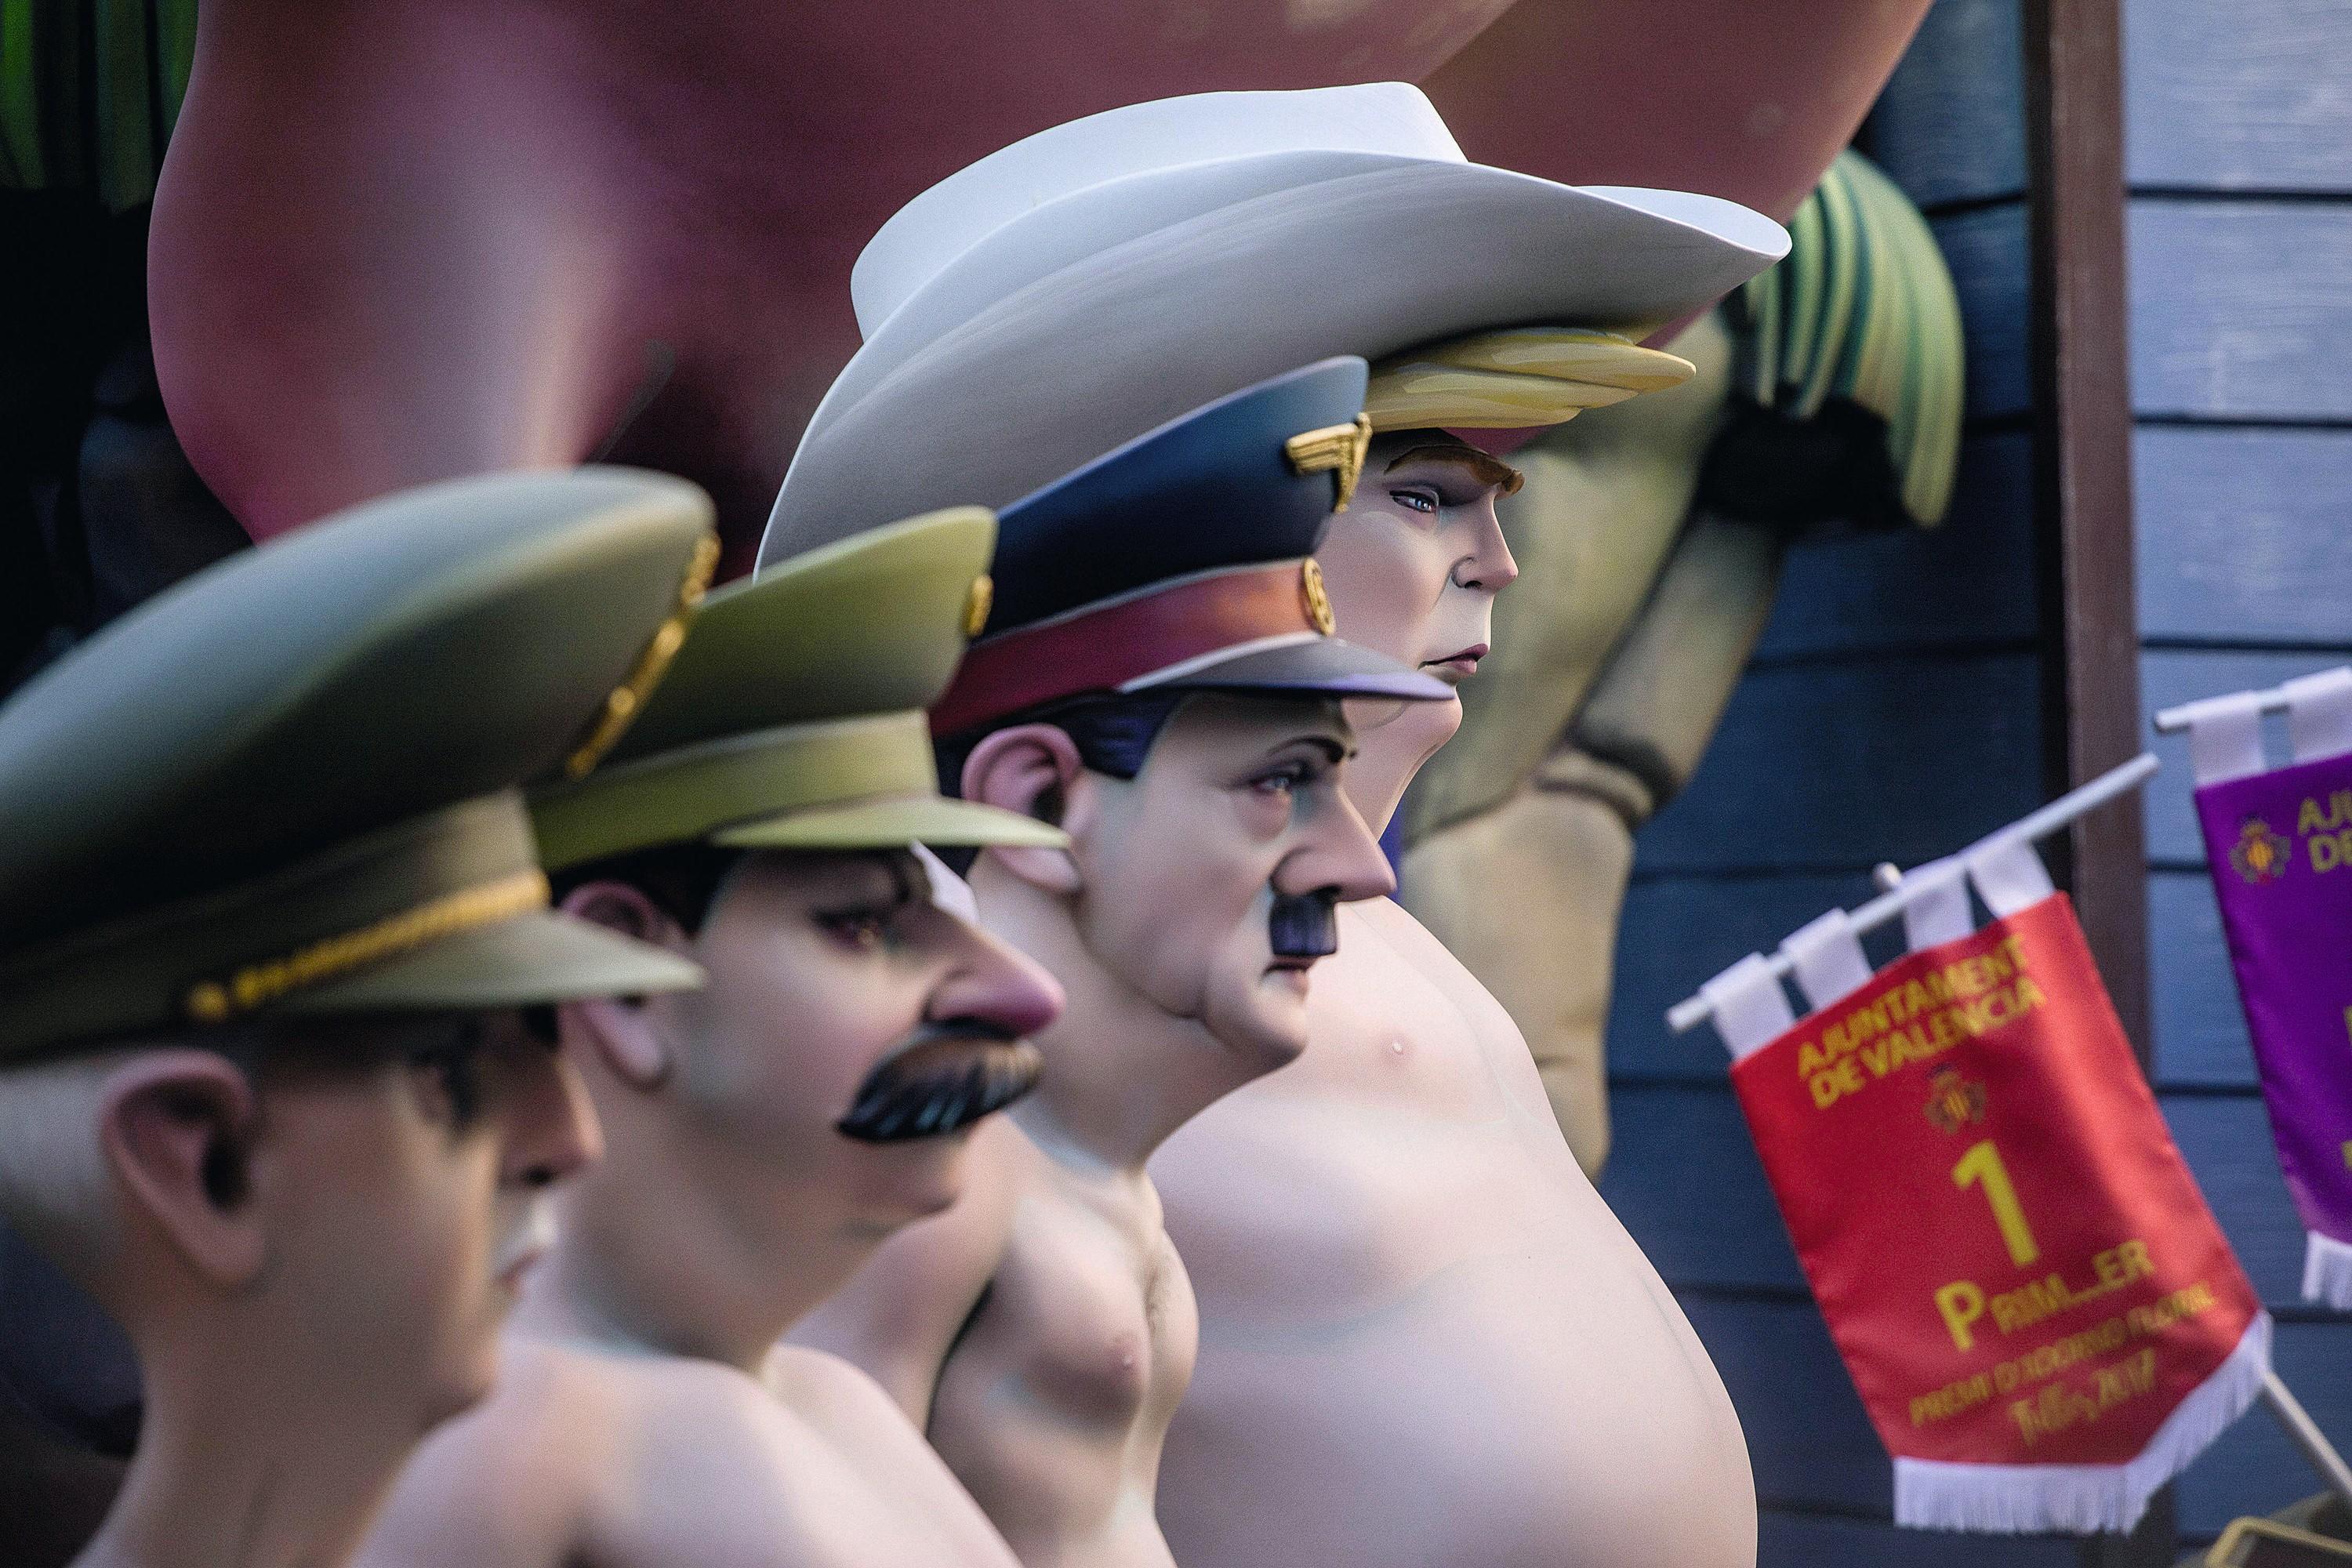 Figuras que representan a los dictadores Francisco Franco, Joseph Stalin, Adolf Hitler,  y al presidente de los Estados Unidos,  Donald Trump, Fallas de Valencia 2019. 